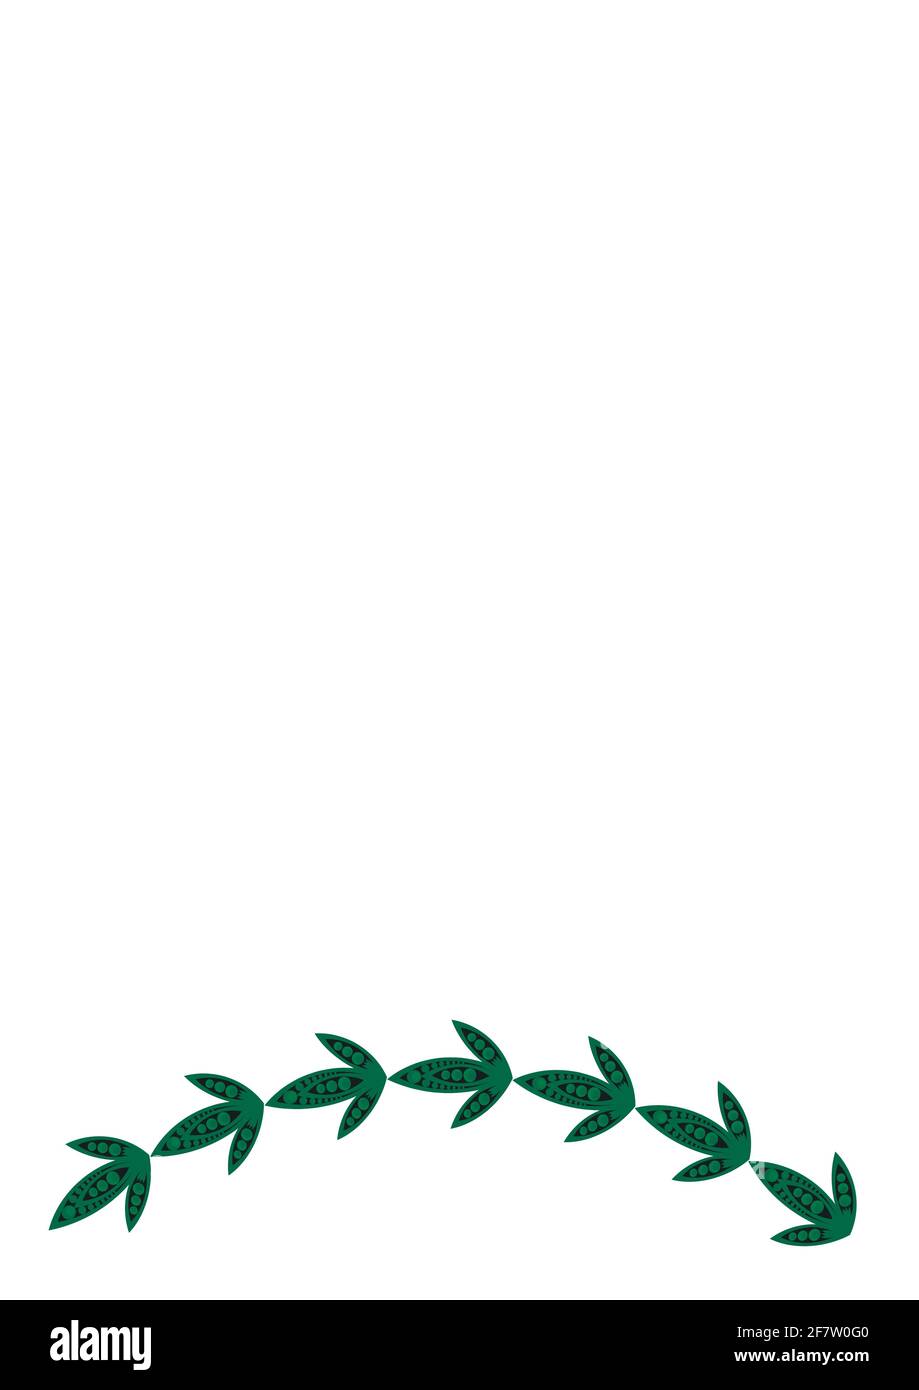 Cornici di foglie stilizzate su sfondo bianco. Formato A4